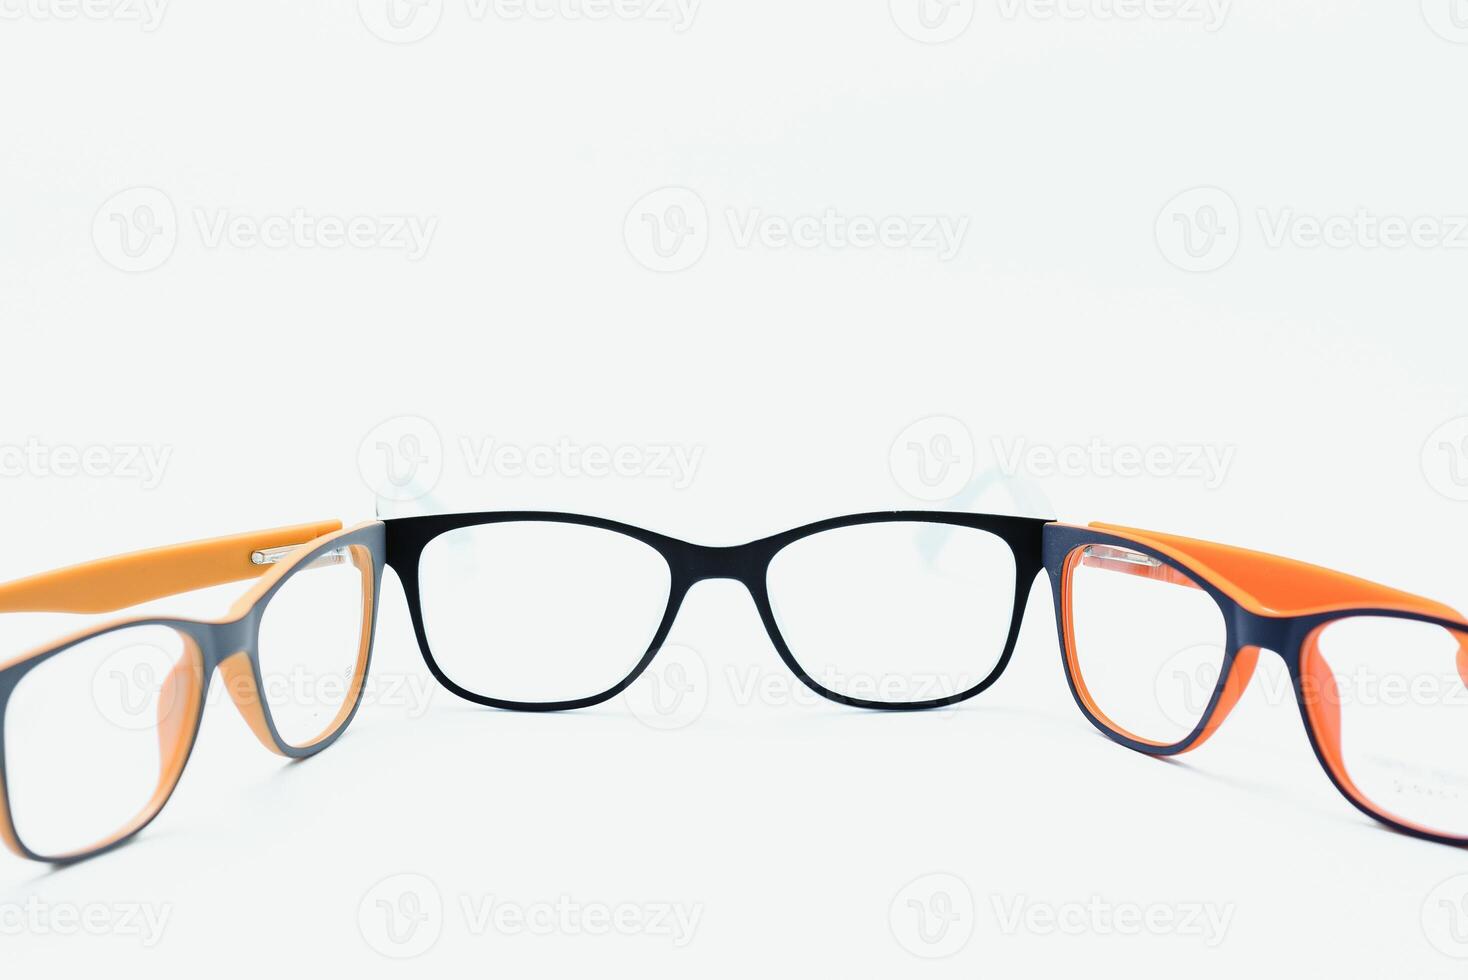 kind plastic kader voor bril. bespotten omhoog voor de ontwerp van optiek op te slaan en winkel, oog kliniek. bril voor lezing en afstand, correctie van zicht. mooi bril rand. foto